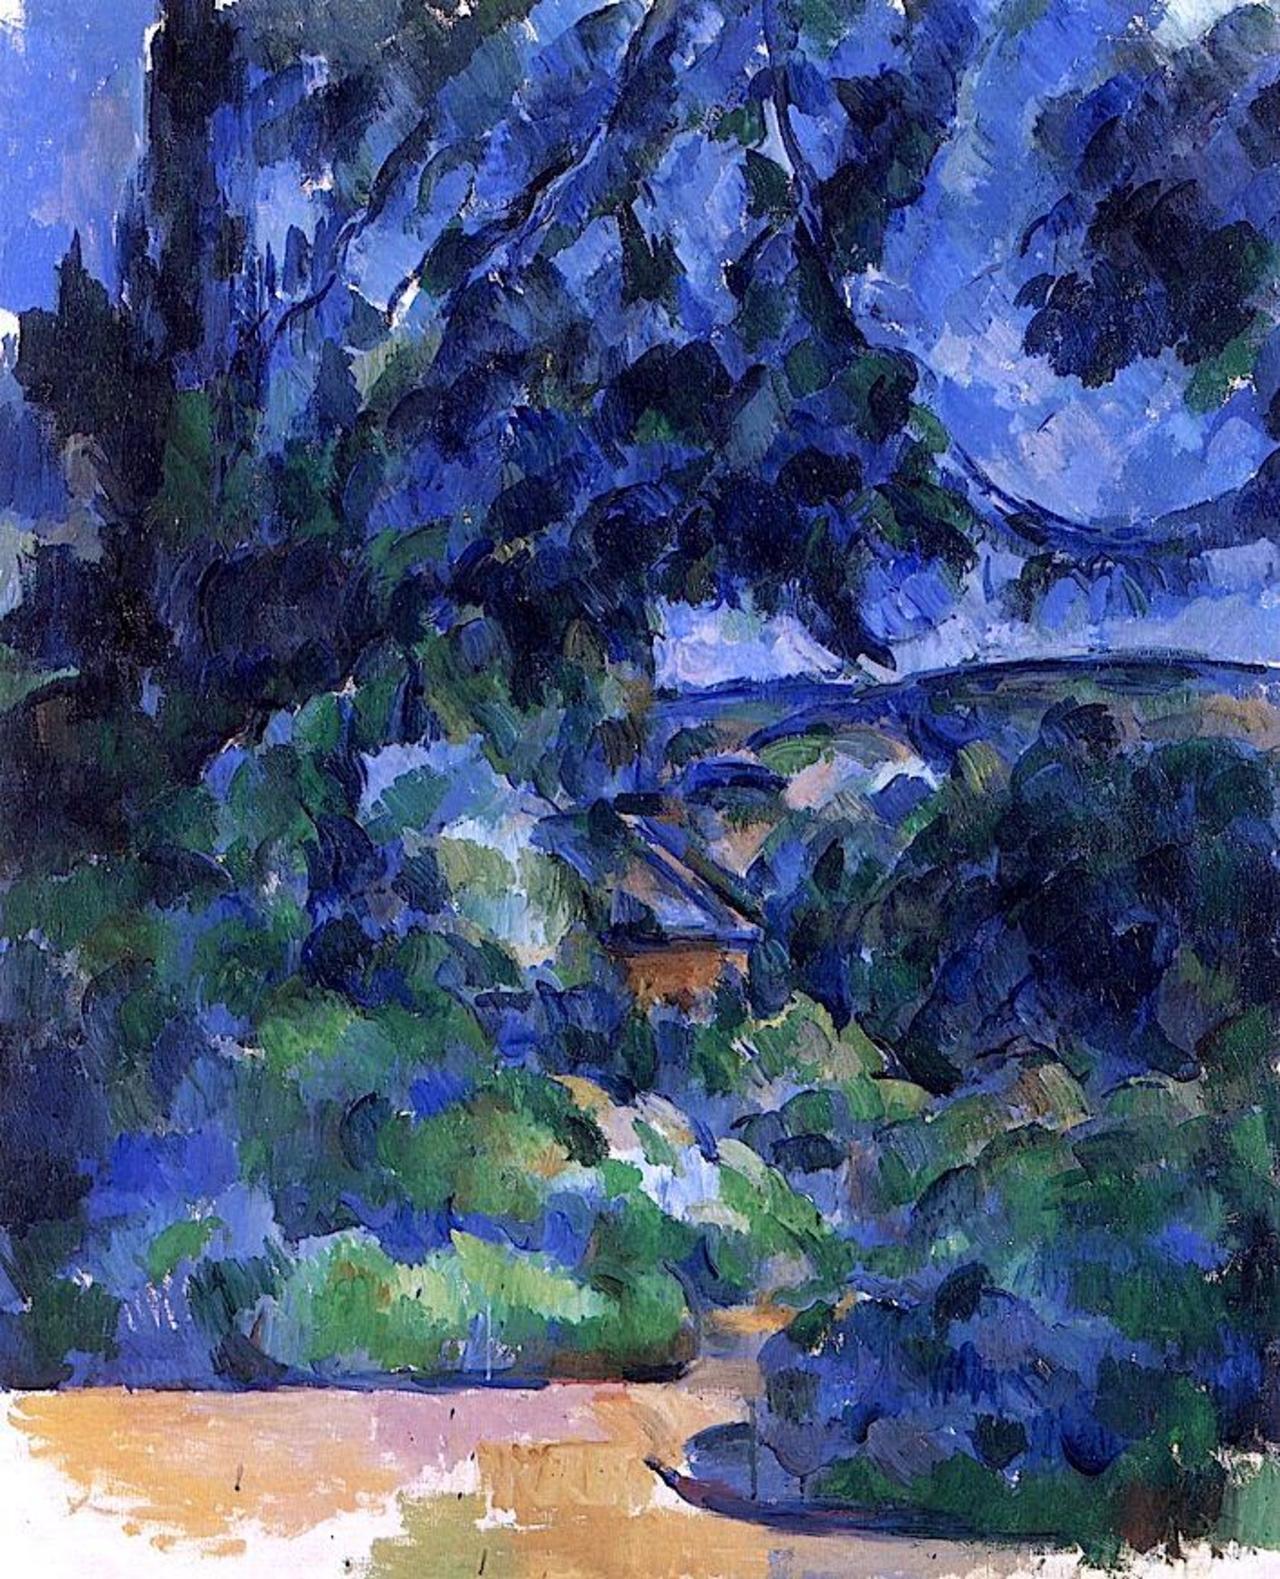 Blue Landscape. Paul #Cezanne - circa 1904-1906 http://t.co/HB7MTG1BxC